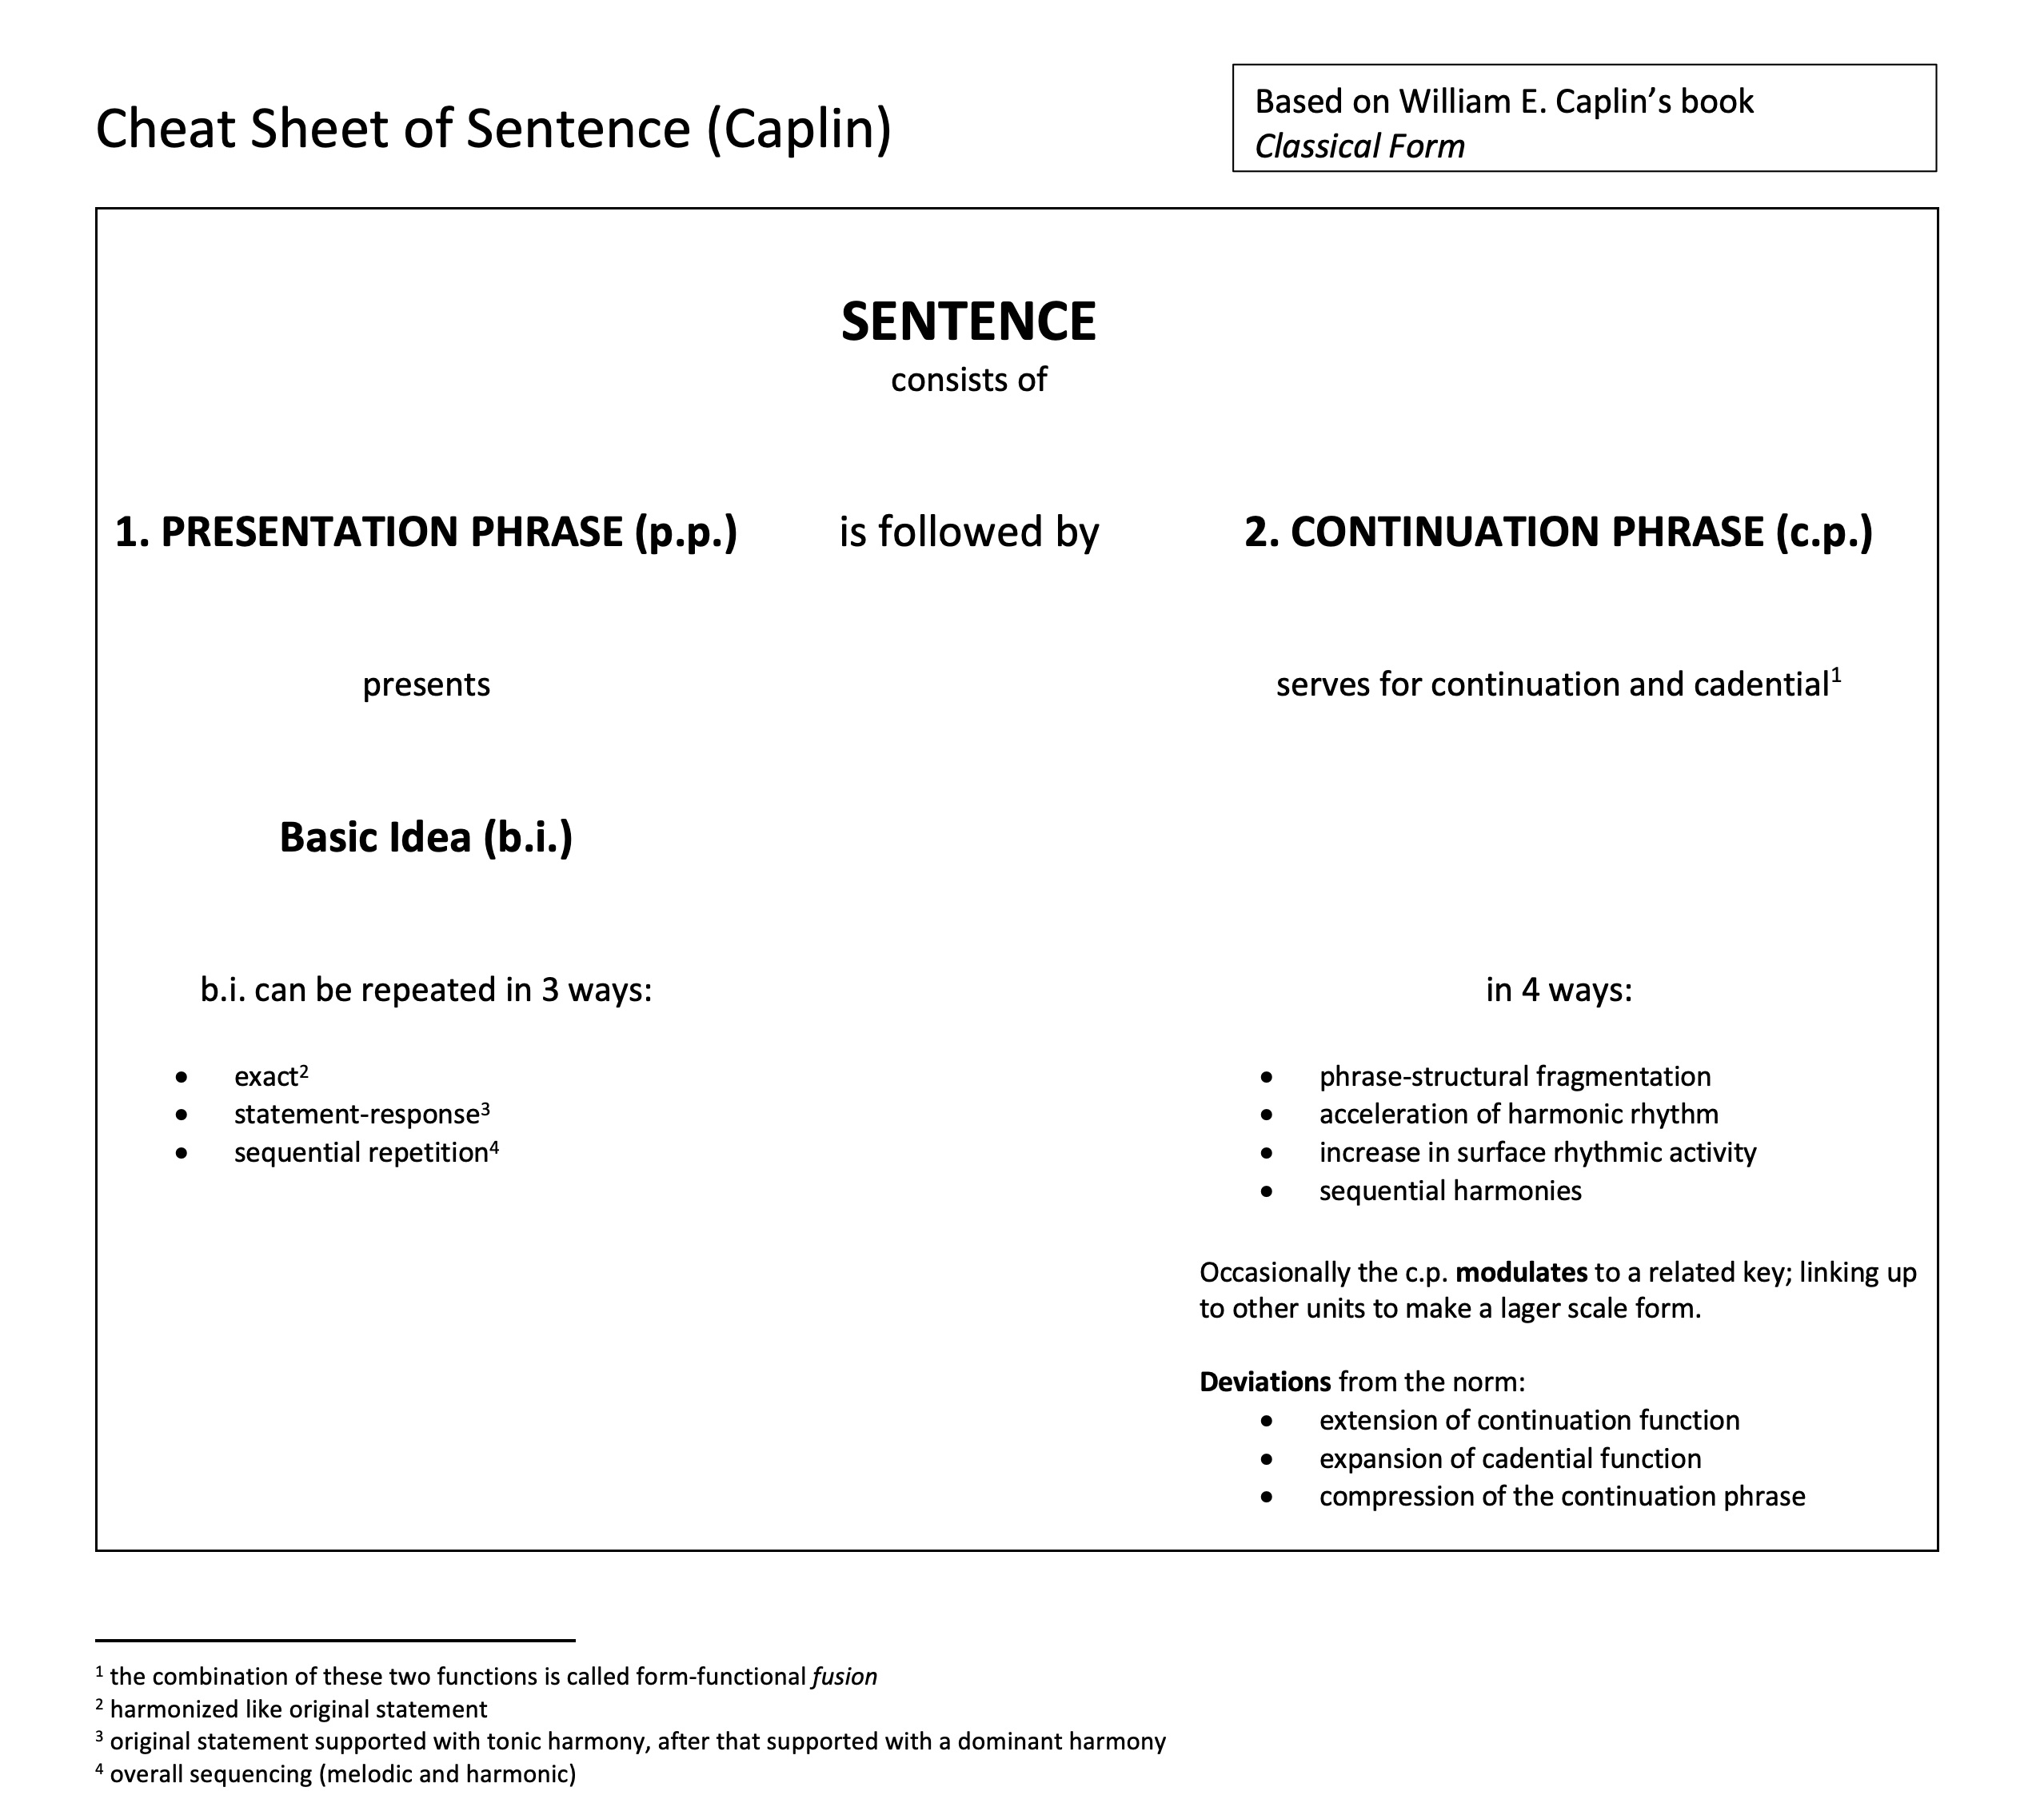 Cheat Sheet Sentence (Caplin).jpg